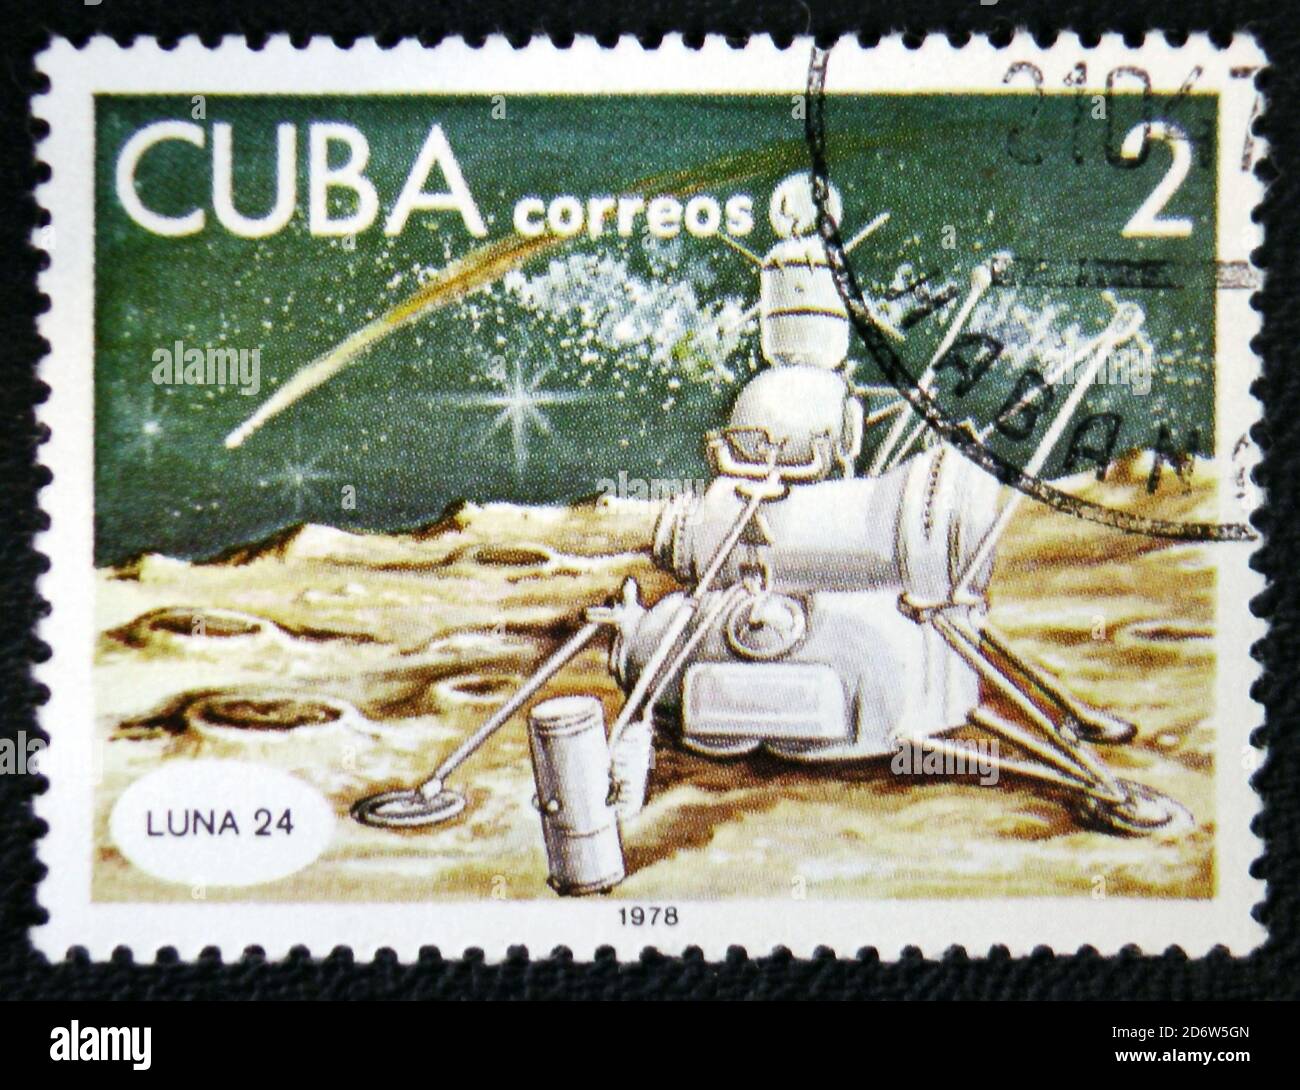 MOSCOU, RUSSIE - 7 JANVIER 2017 : un timbre imprimé à Cuba montre le vaisseau spatial Lune 24, vers 1978 Banque D'Images